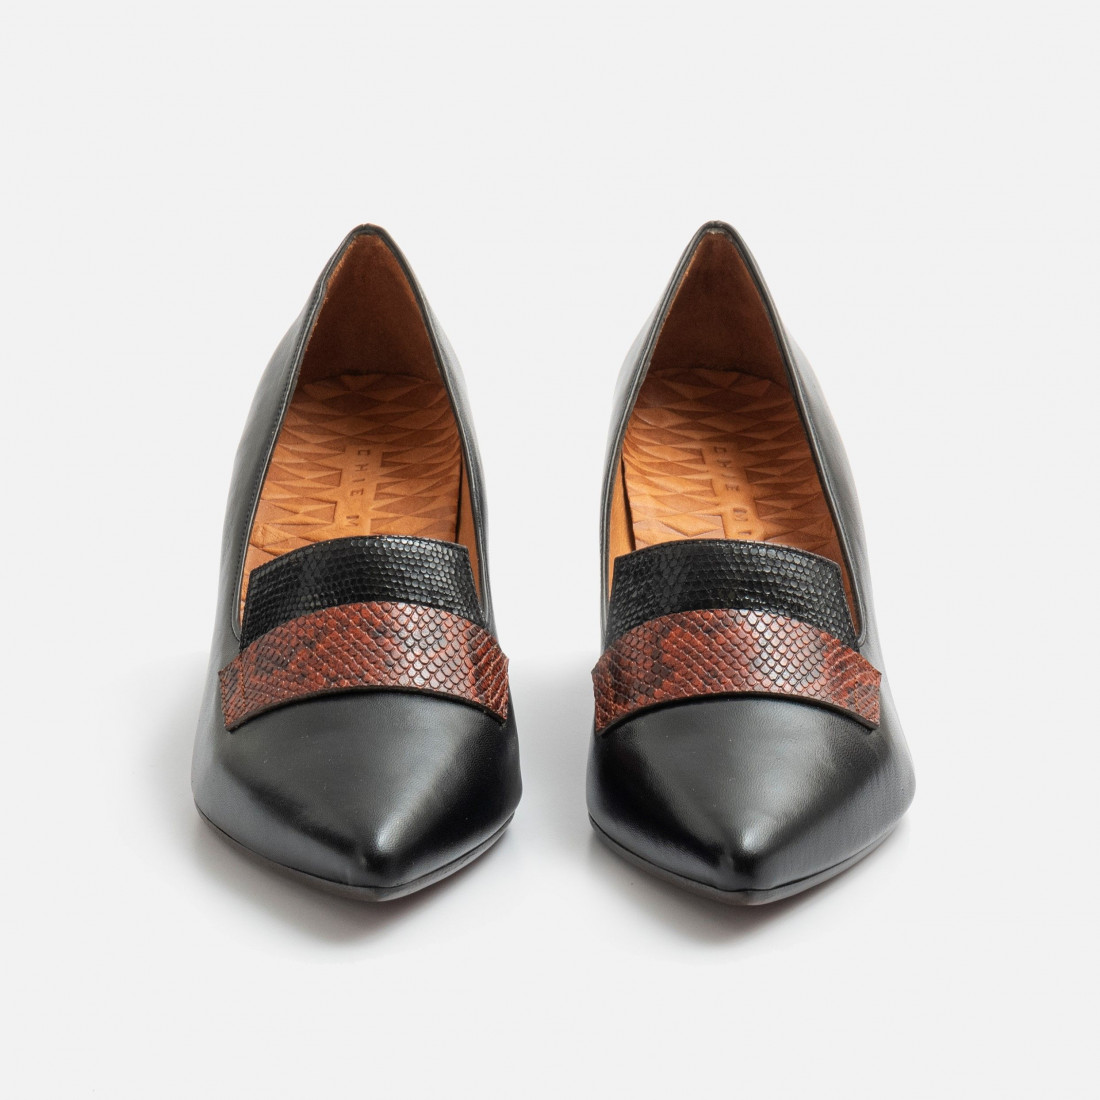 Chie Mihara Quatia-schoen met hak in zwart en bruin leer